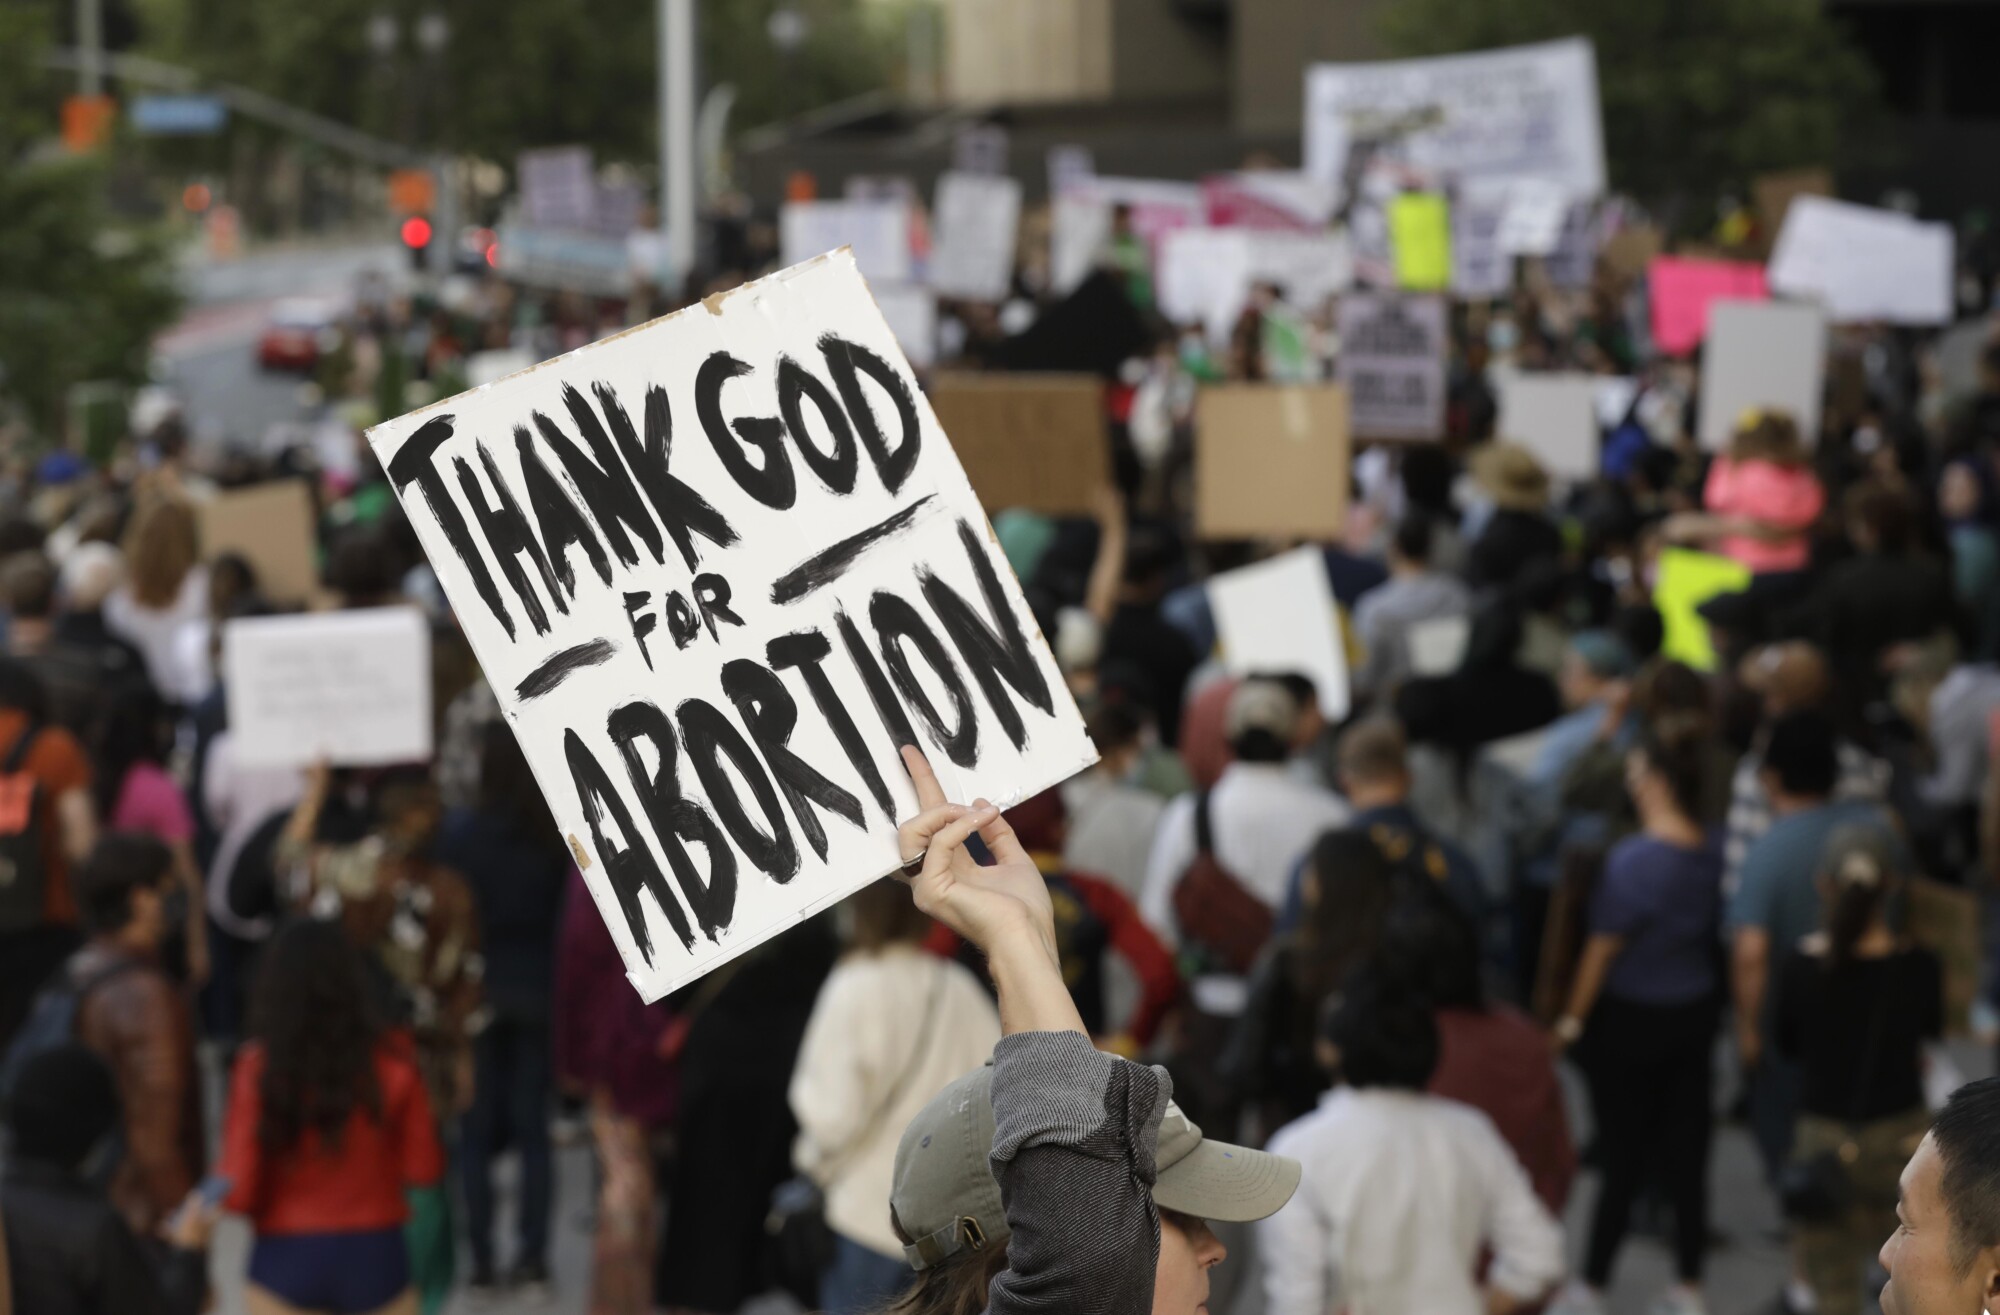 Le manifestant brandit une pancarte indiquant "Dieu merci pour l'avortement"